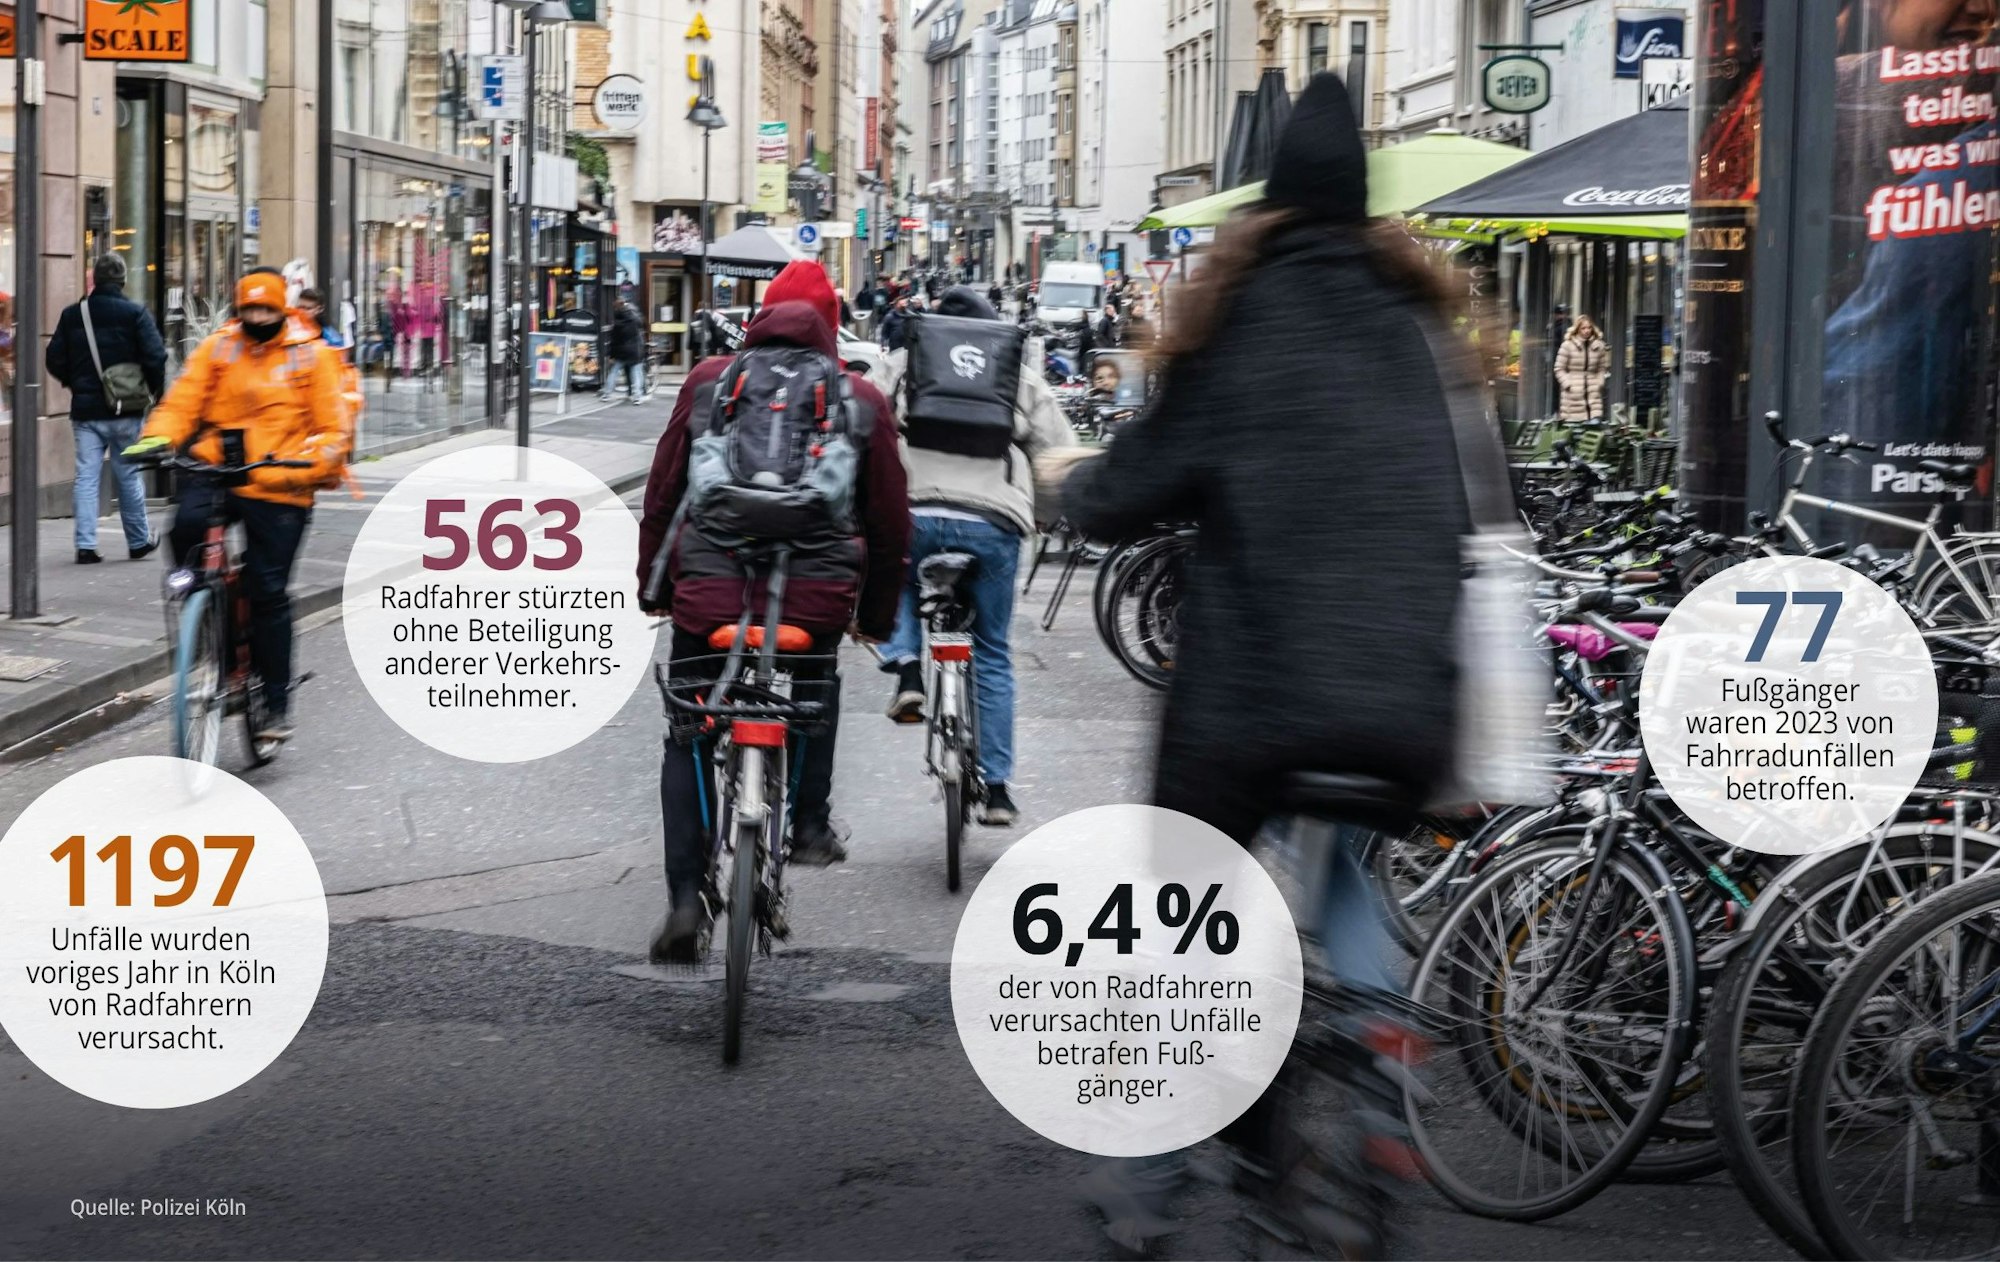 Grafik zu Unfällen mit Radfahrern und Fußgängern in Köln.